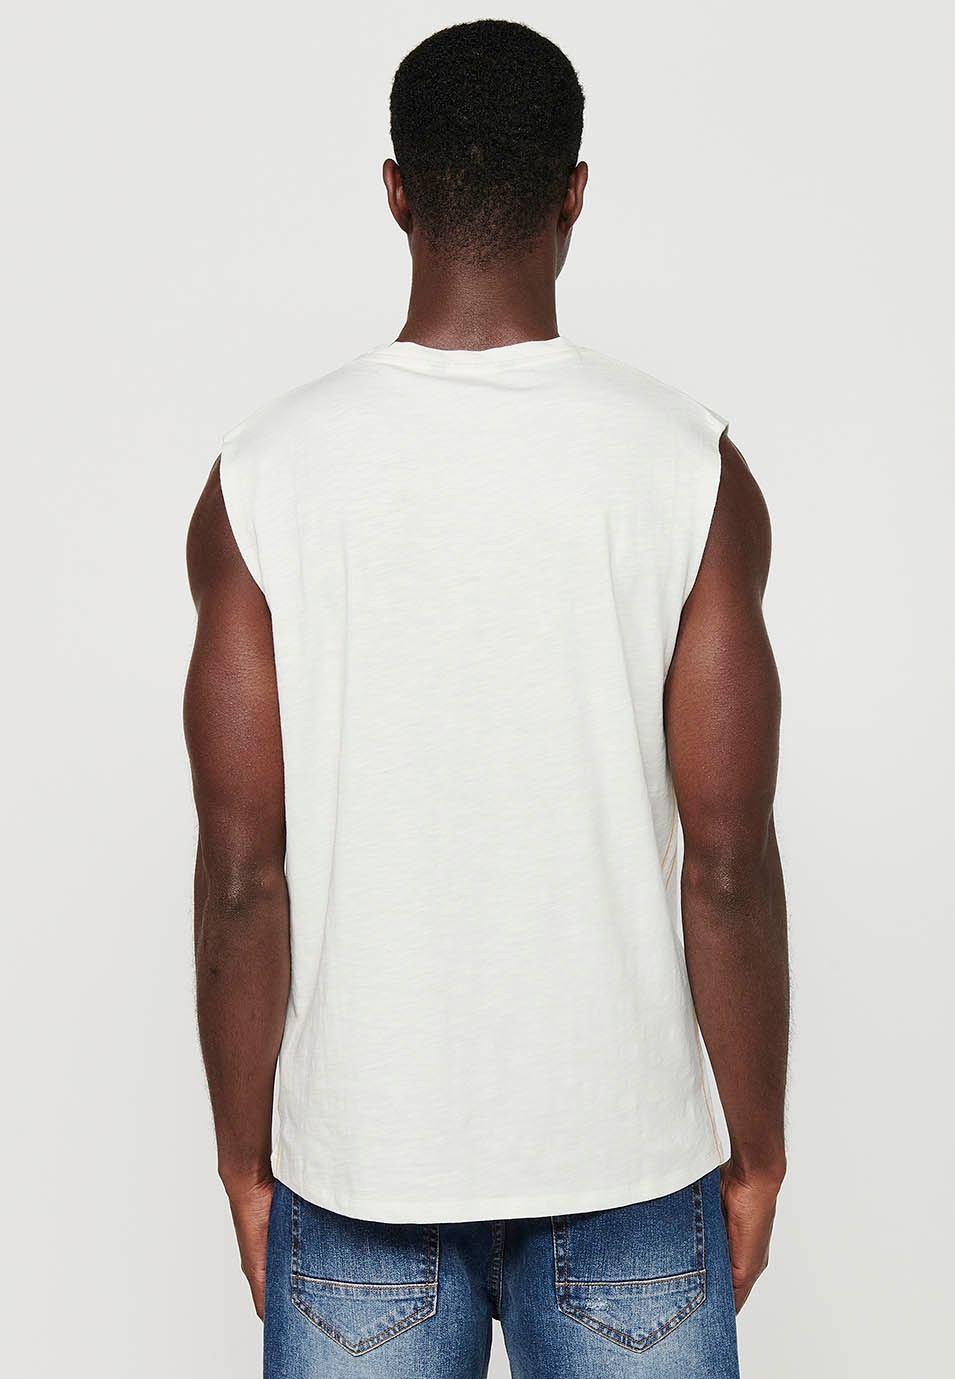 Camiseta sin mangas con estampado delantero, color blanco para hombres